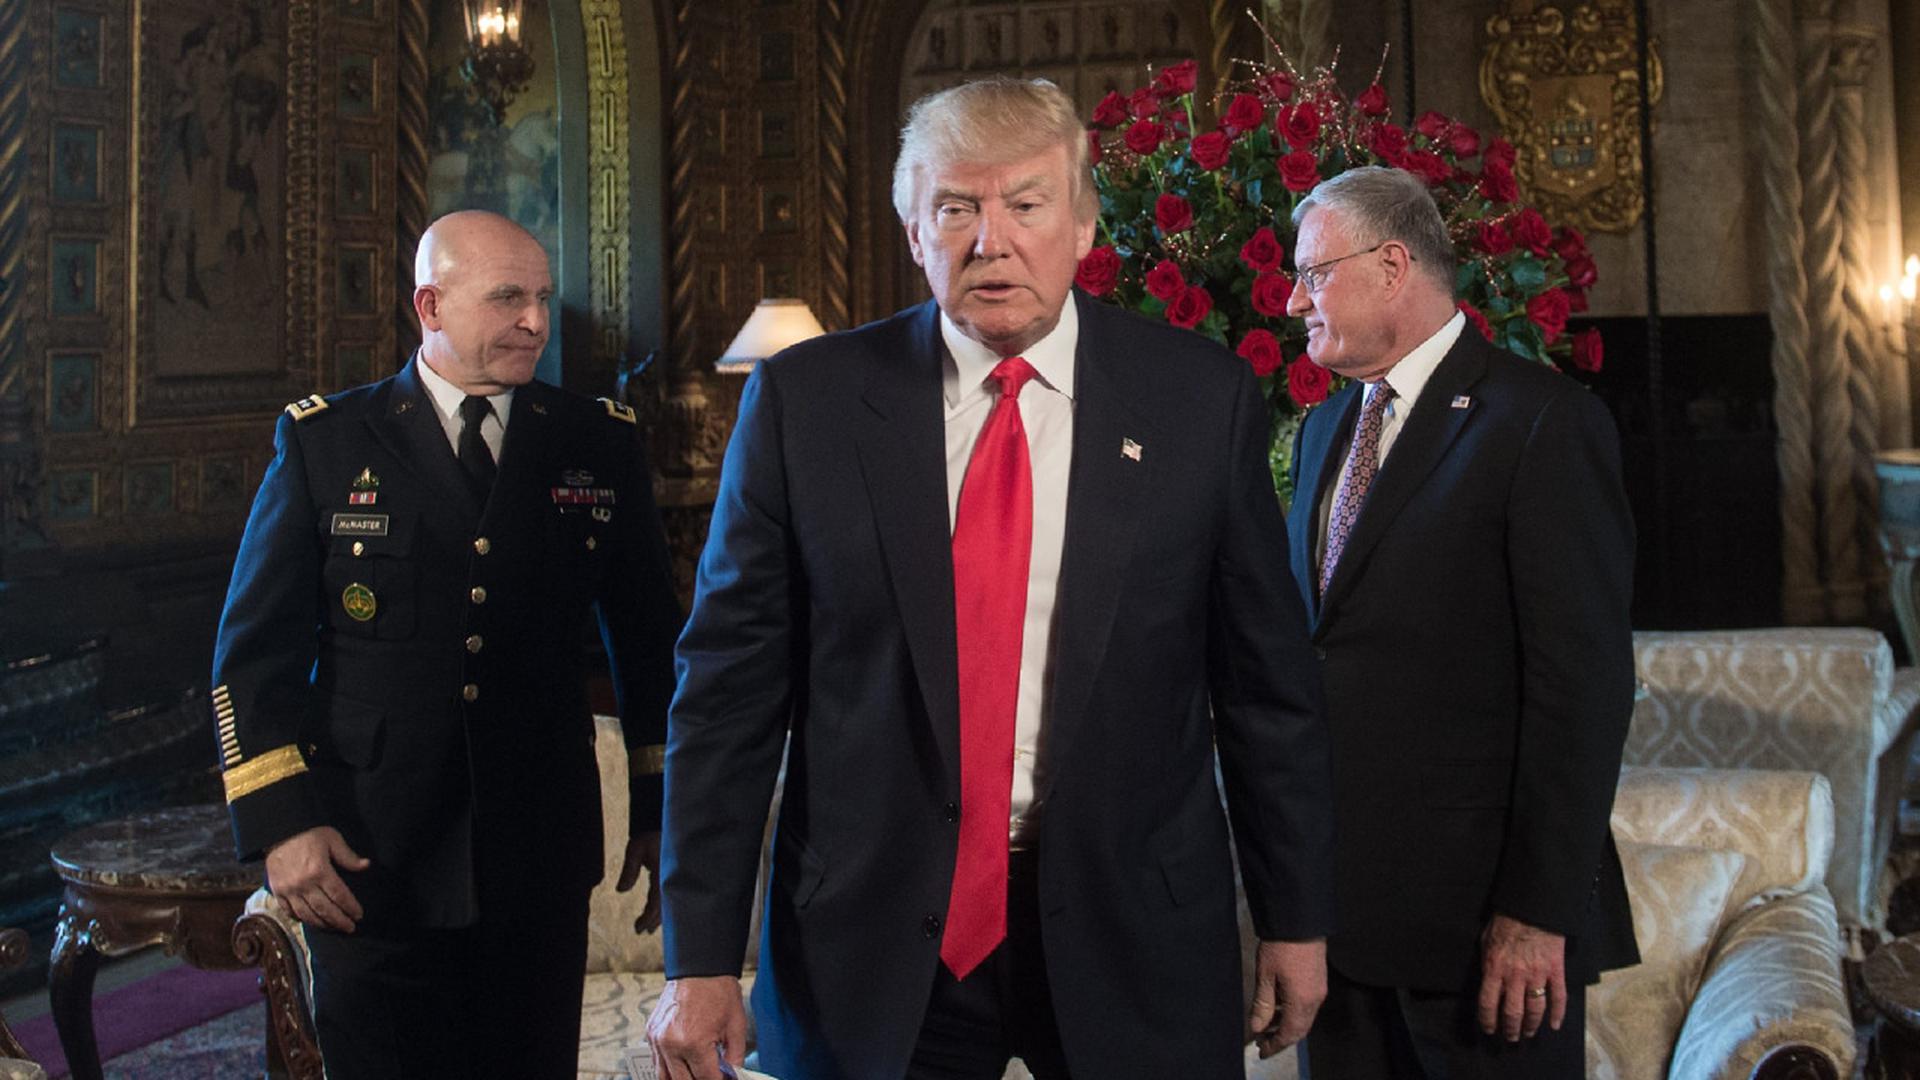 Le 28 janvier, huit jours après son investiture, Donald Trump avait publié un décret donnant 30 jours au Pentagone pour préparer un nouveau plan accélérant la campagne contre l'EI. 